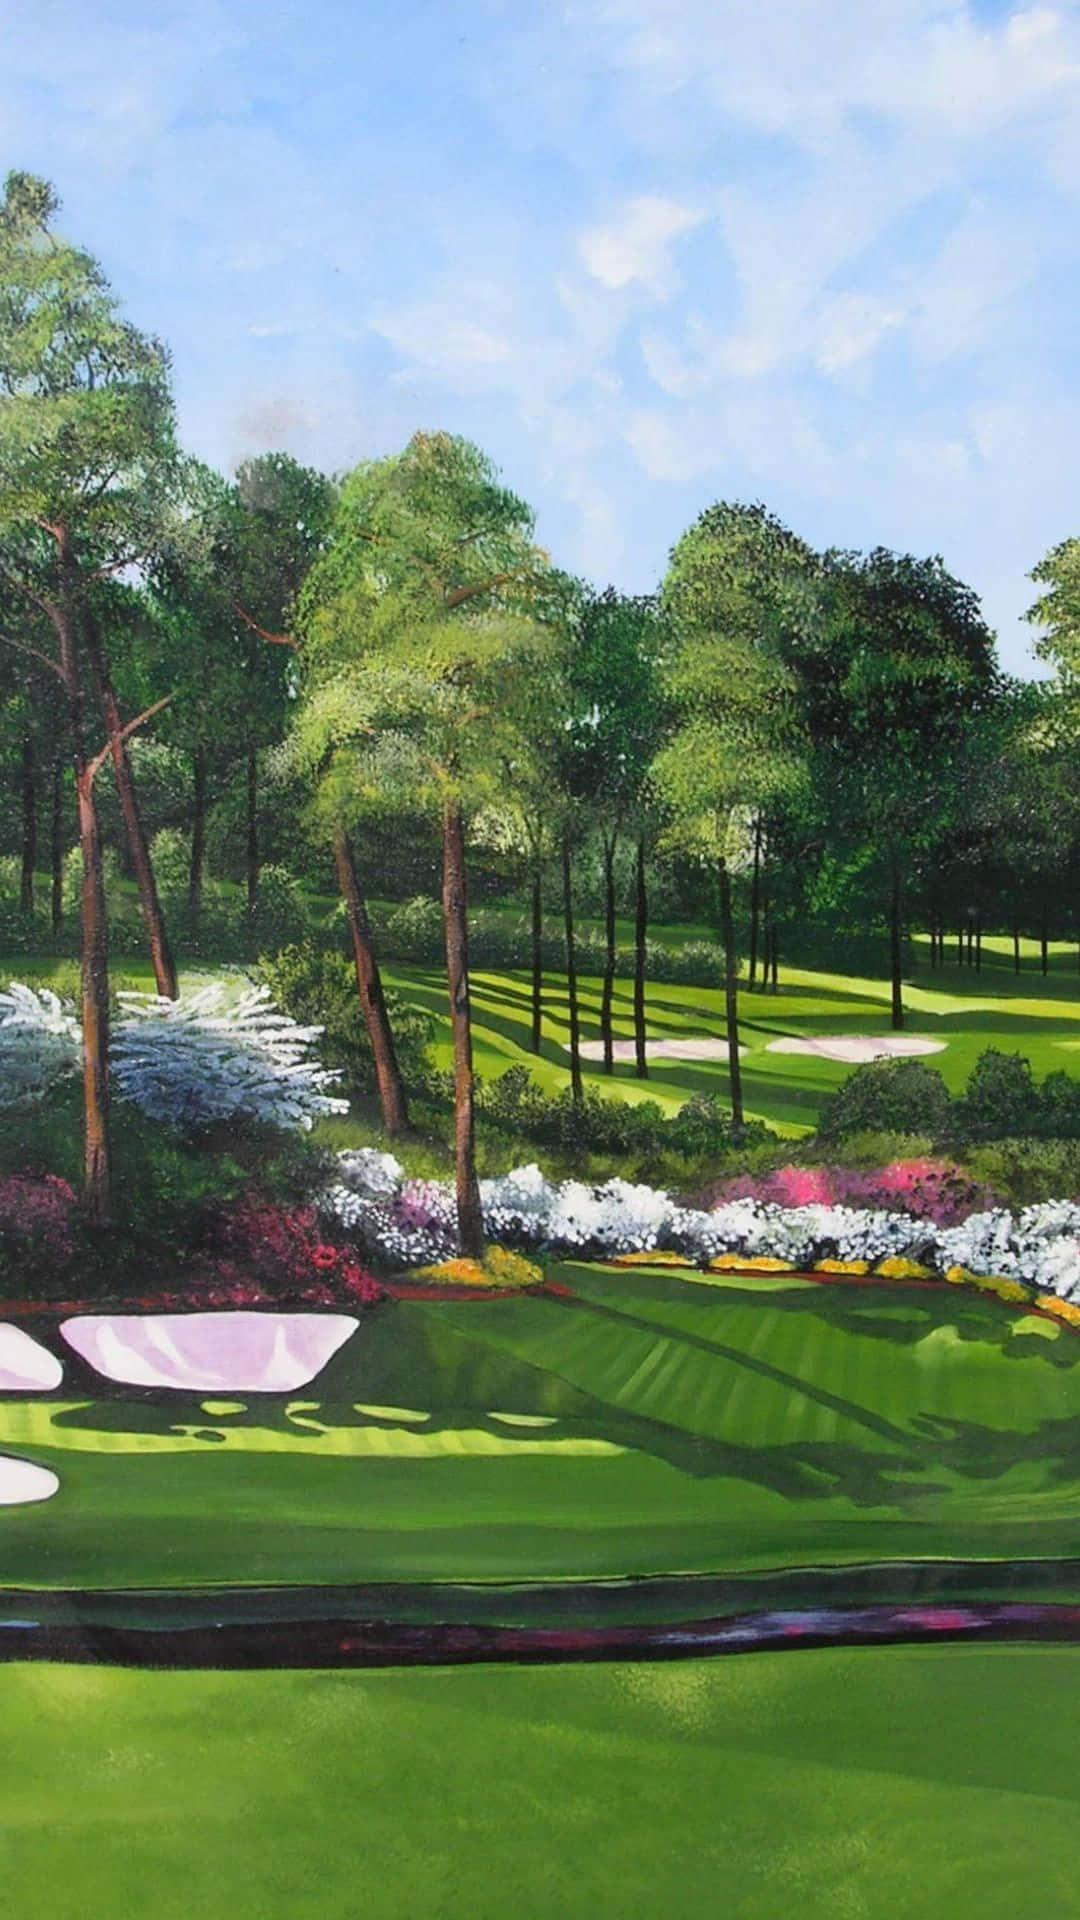 Enmålning Av En Golfbana Med Träd Och Grönt Gräs. Wallpaper